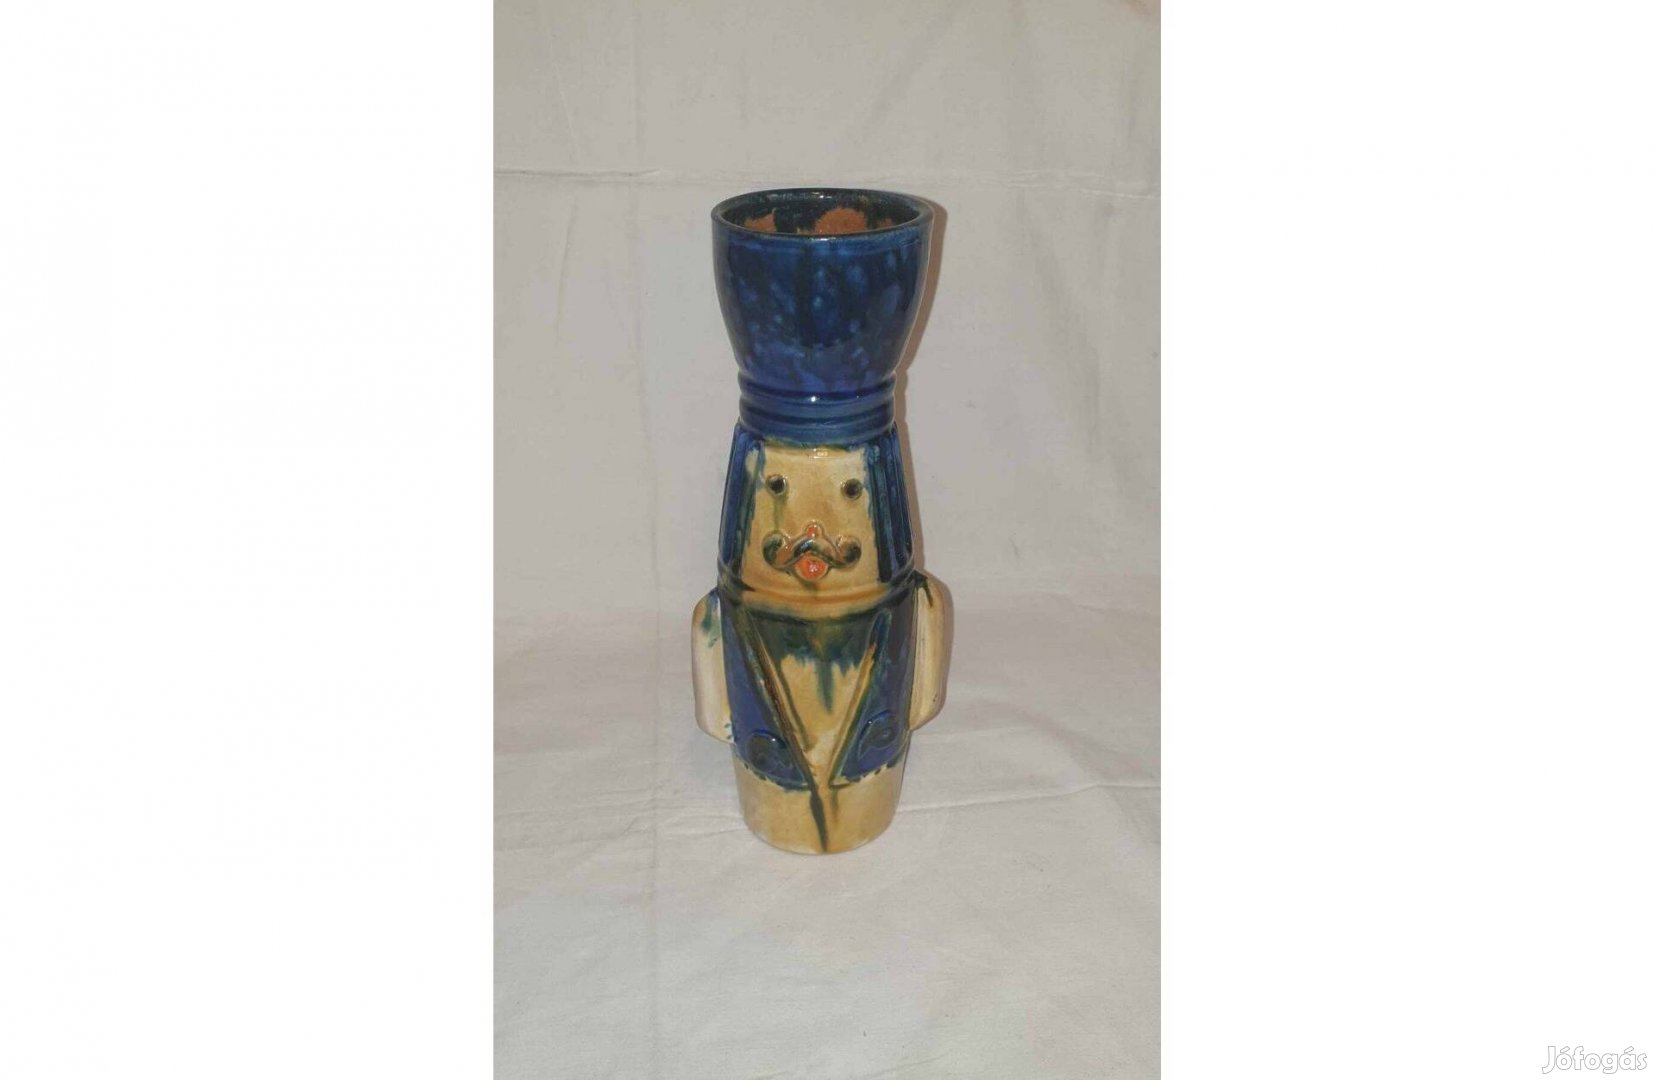 Fórizsné Sárai Erzsébet figurális kerámia váza